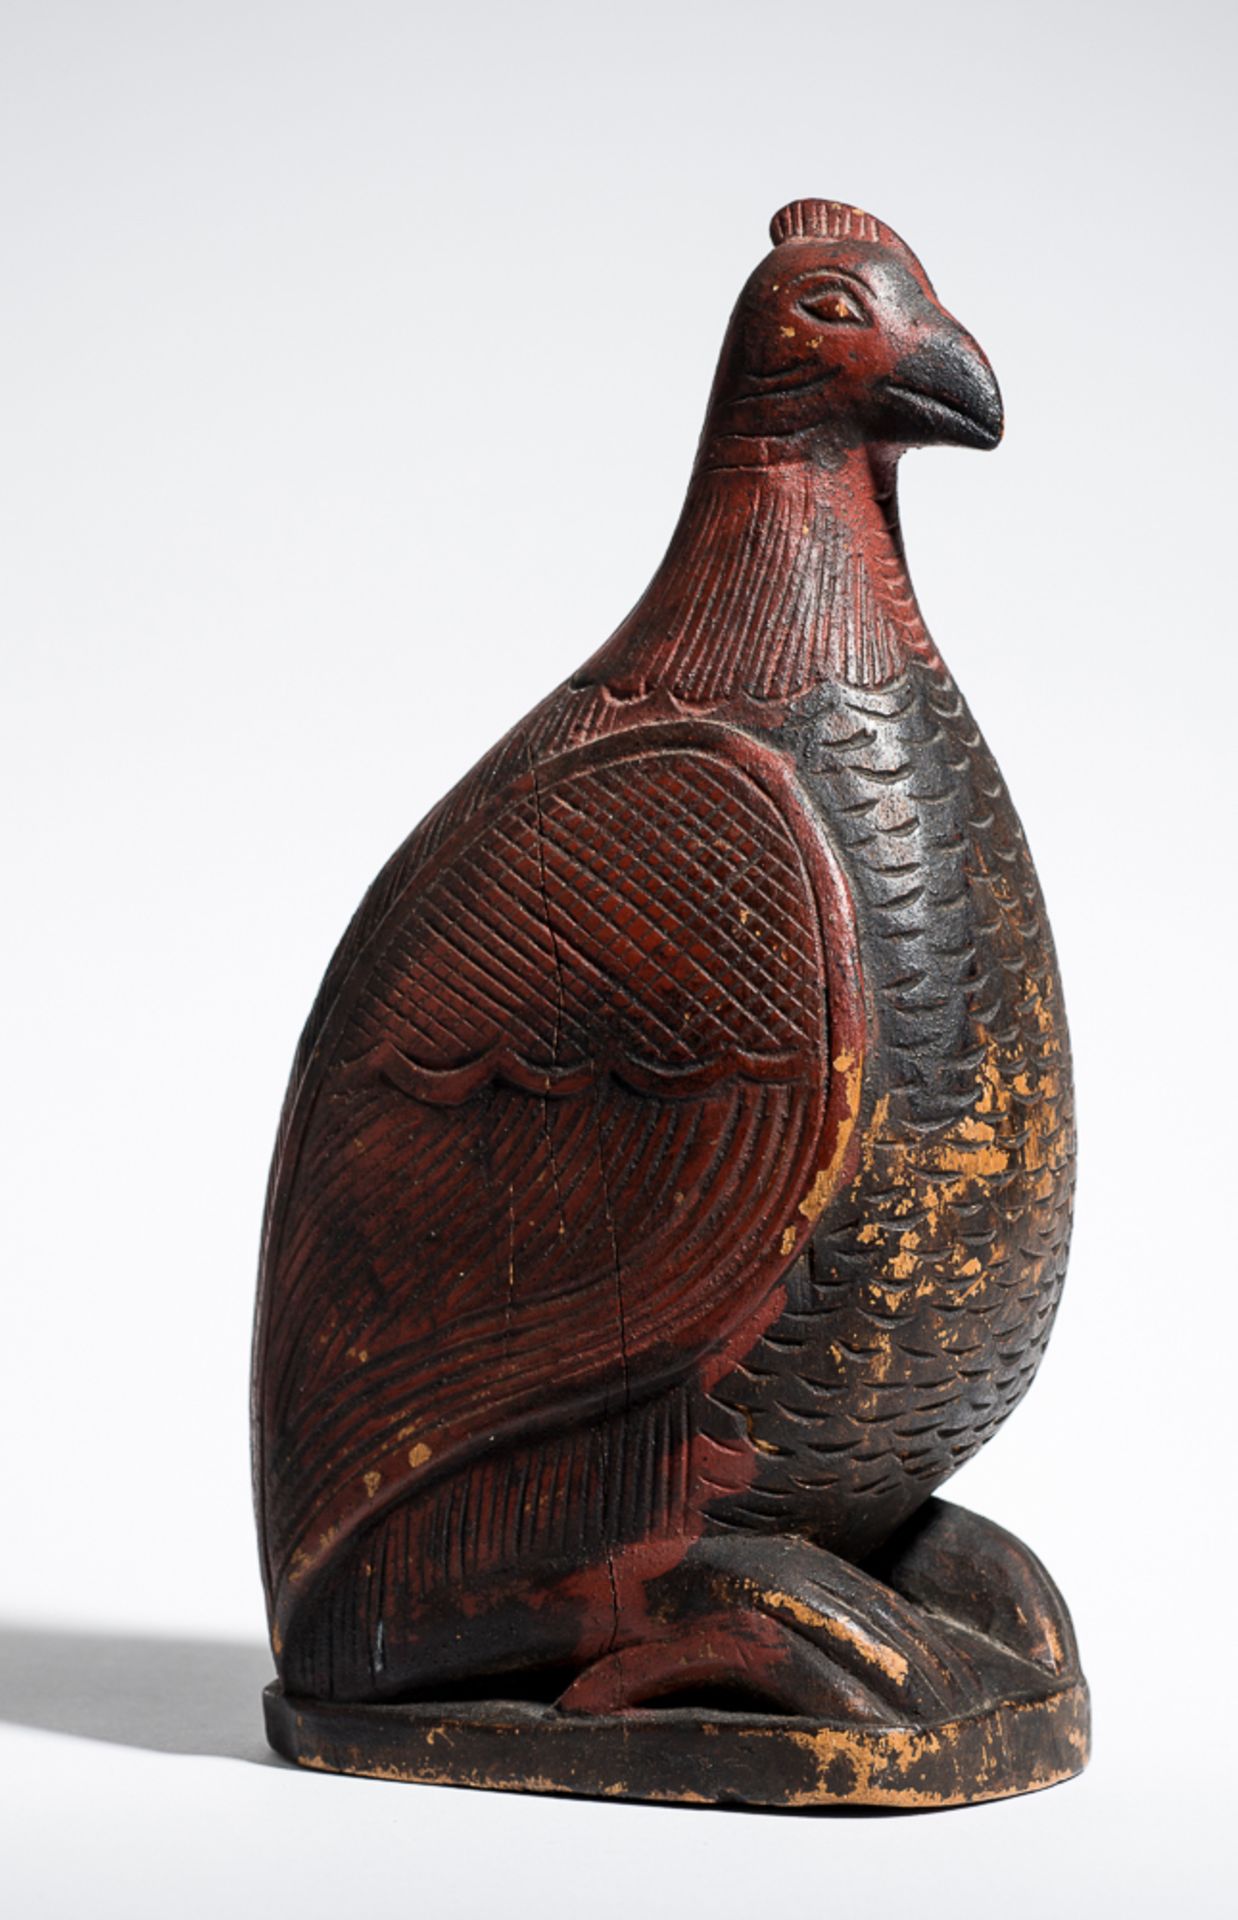 VOGEL (BEHÄLTER)
Holz mit Bemalung. SüdostasienVollplastischer Vogel auf Basis, großes, dekorativ